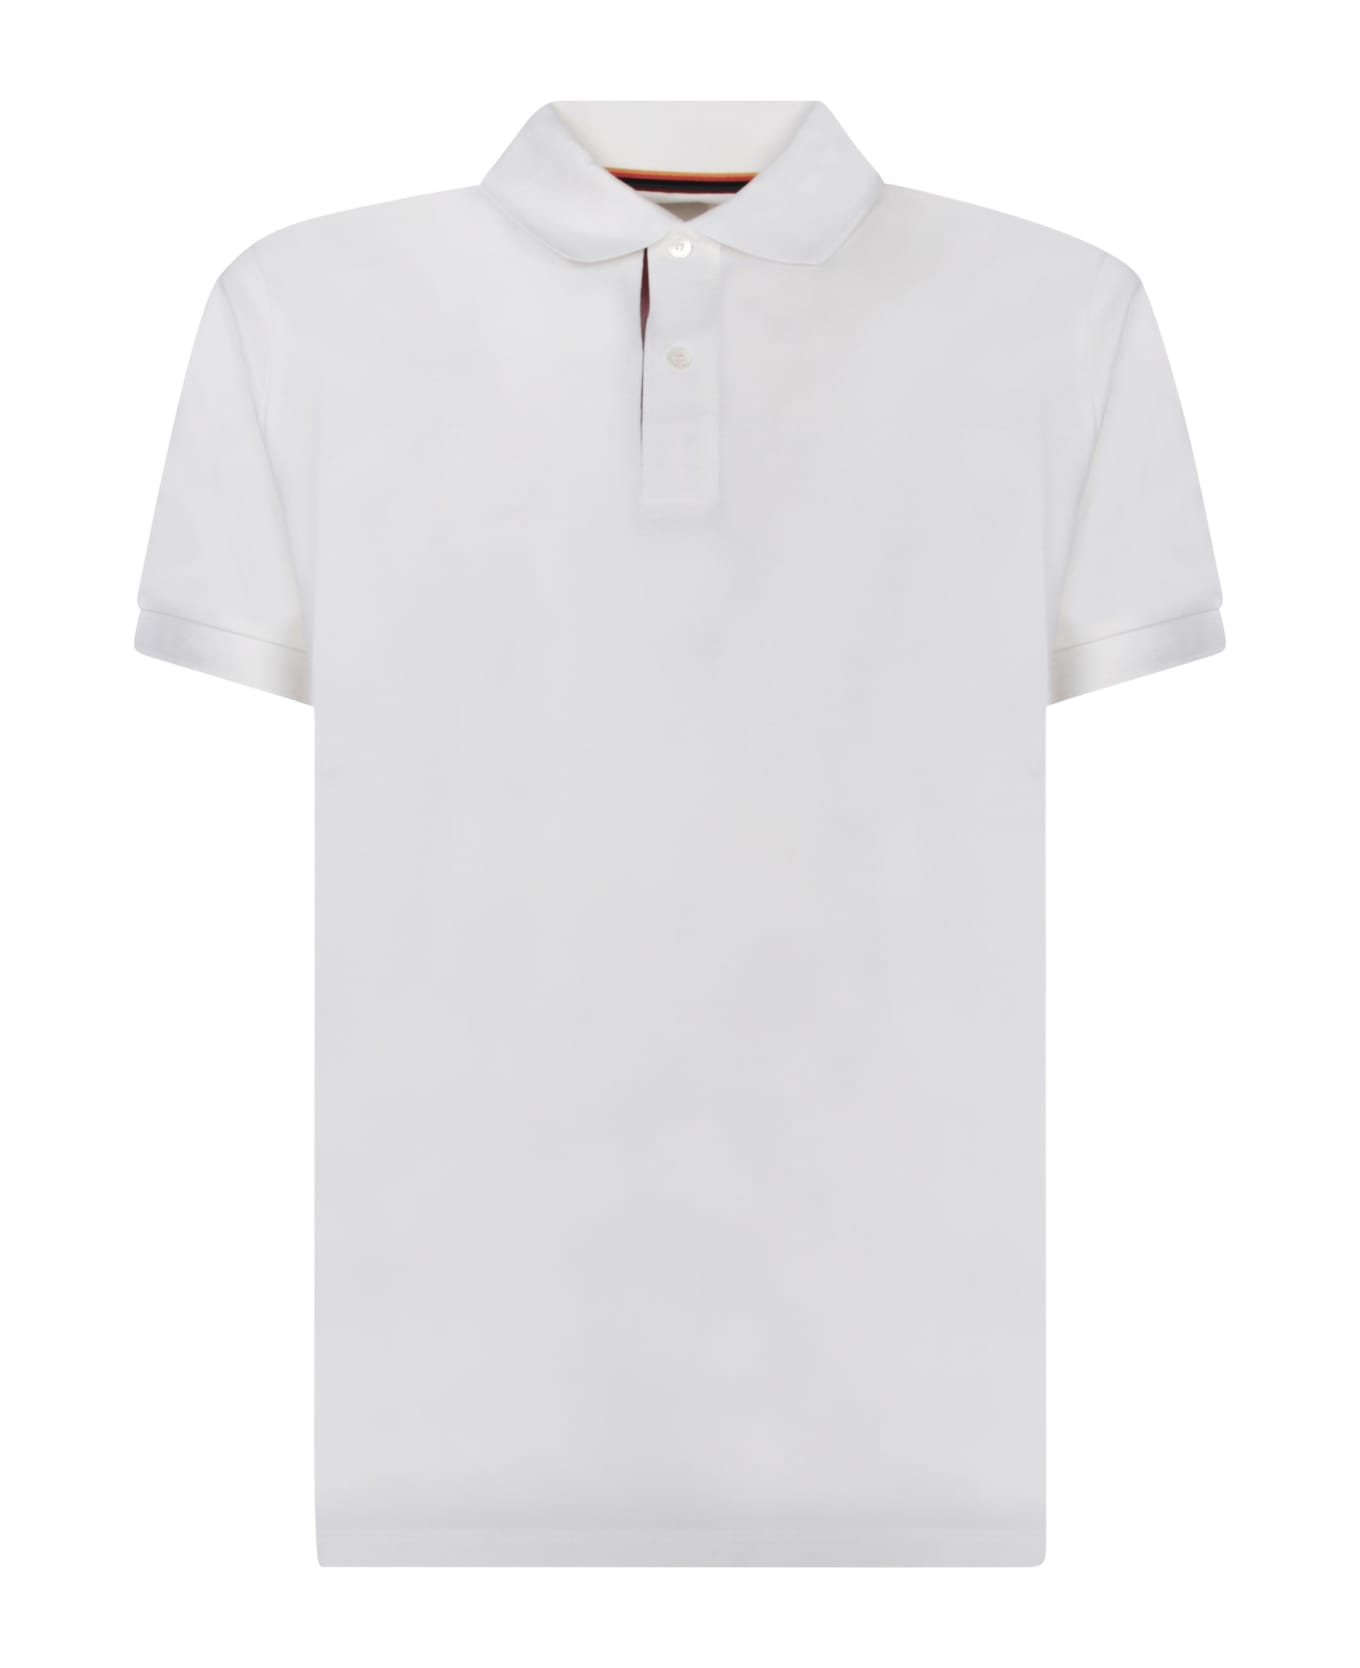 Paul Smith Striped Motif White Polo Shirt - White